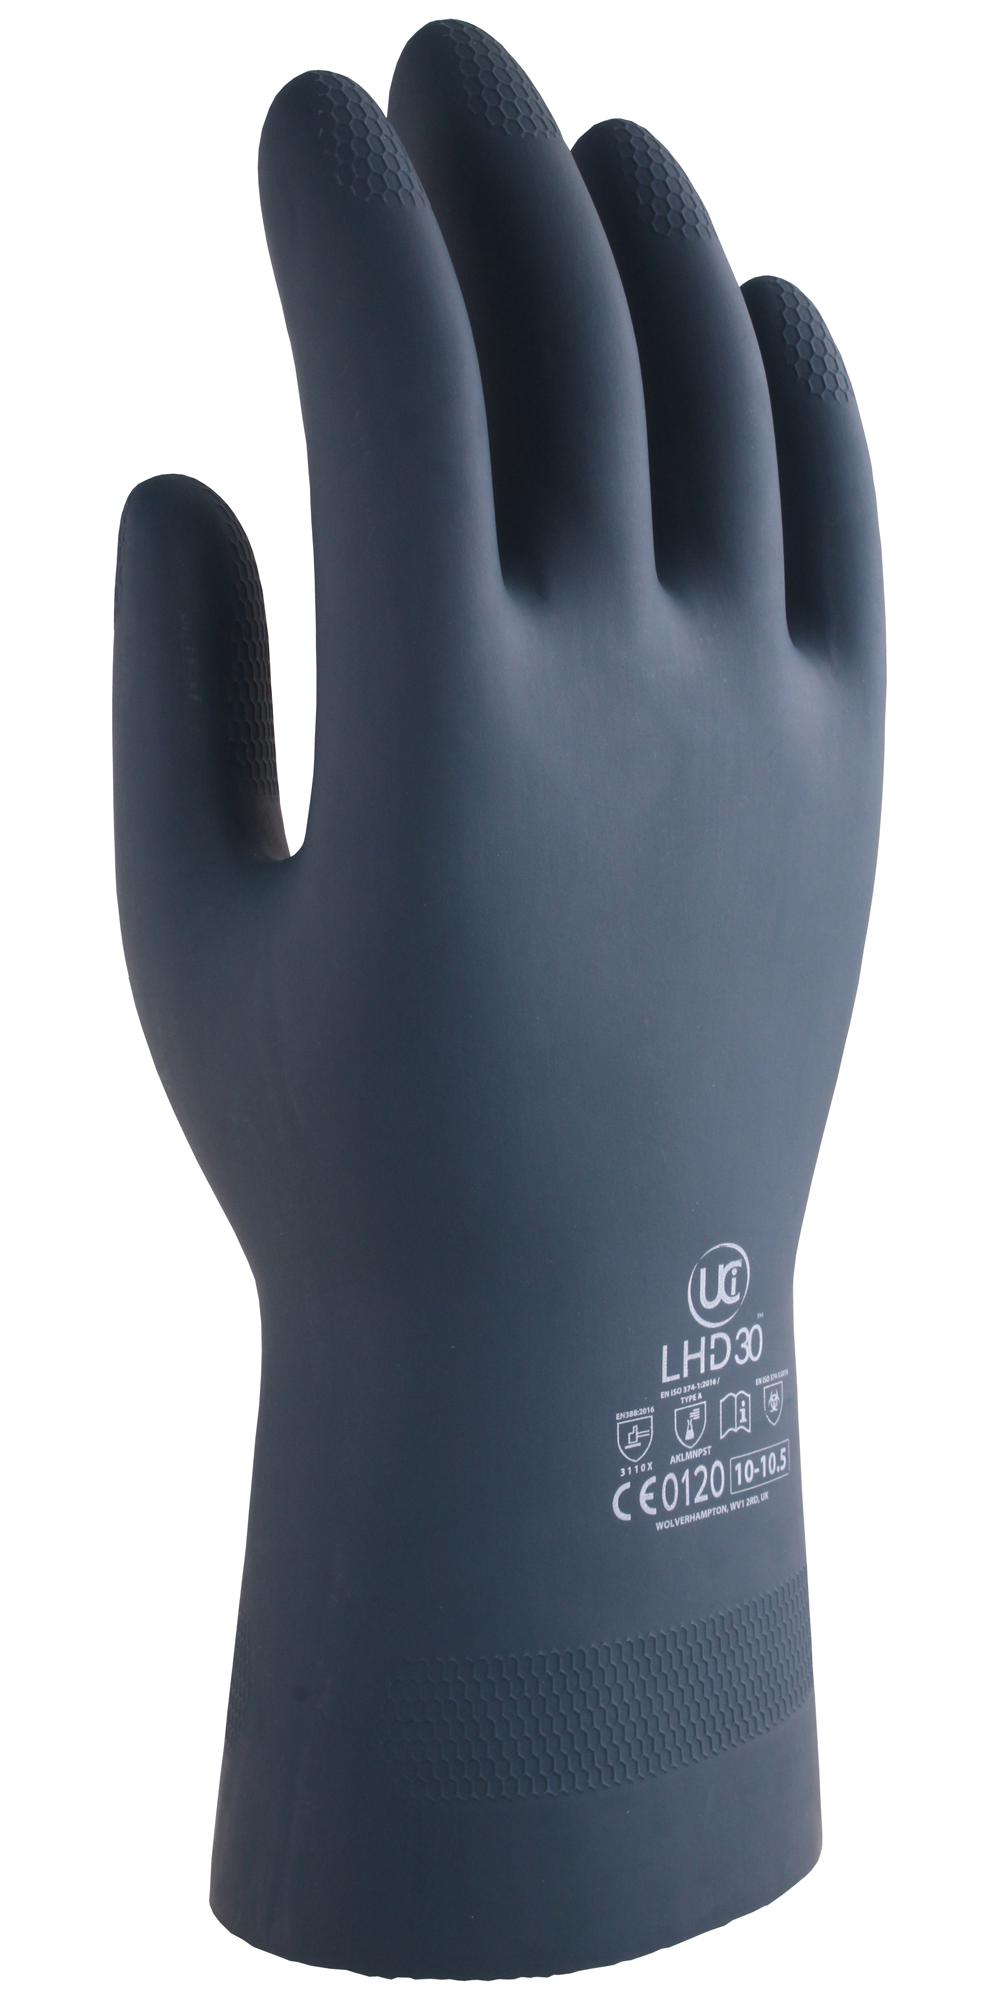 Uci G/lhd30/bk/09 Gloves, Rubber/neoprene, Black, L